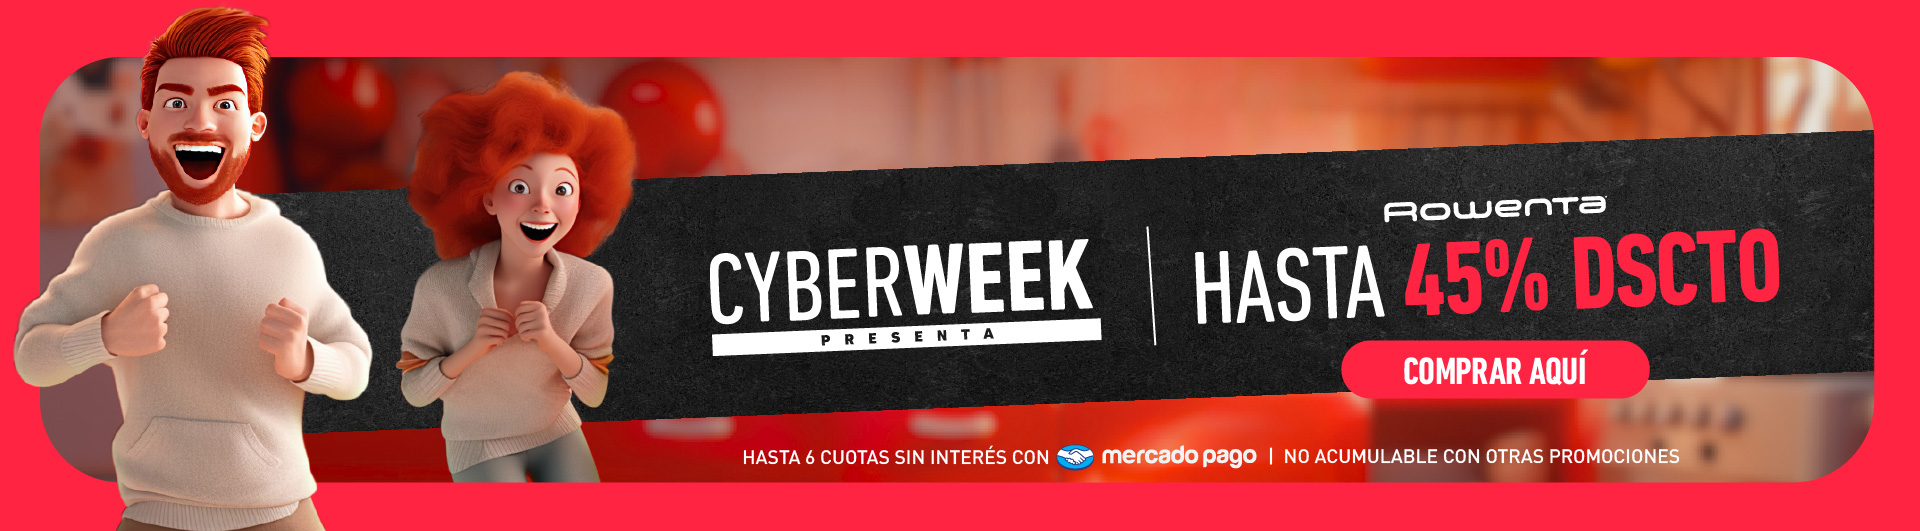 Ofertas Cyber Week Rowenta